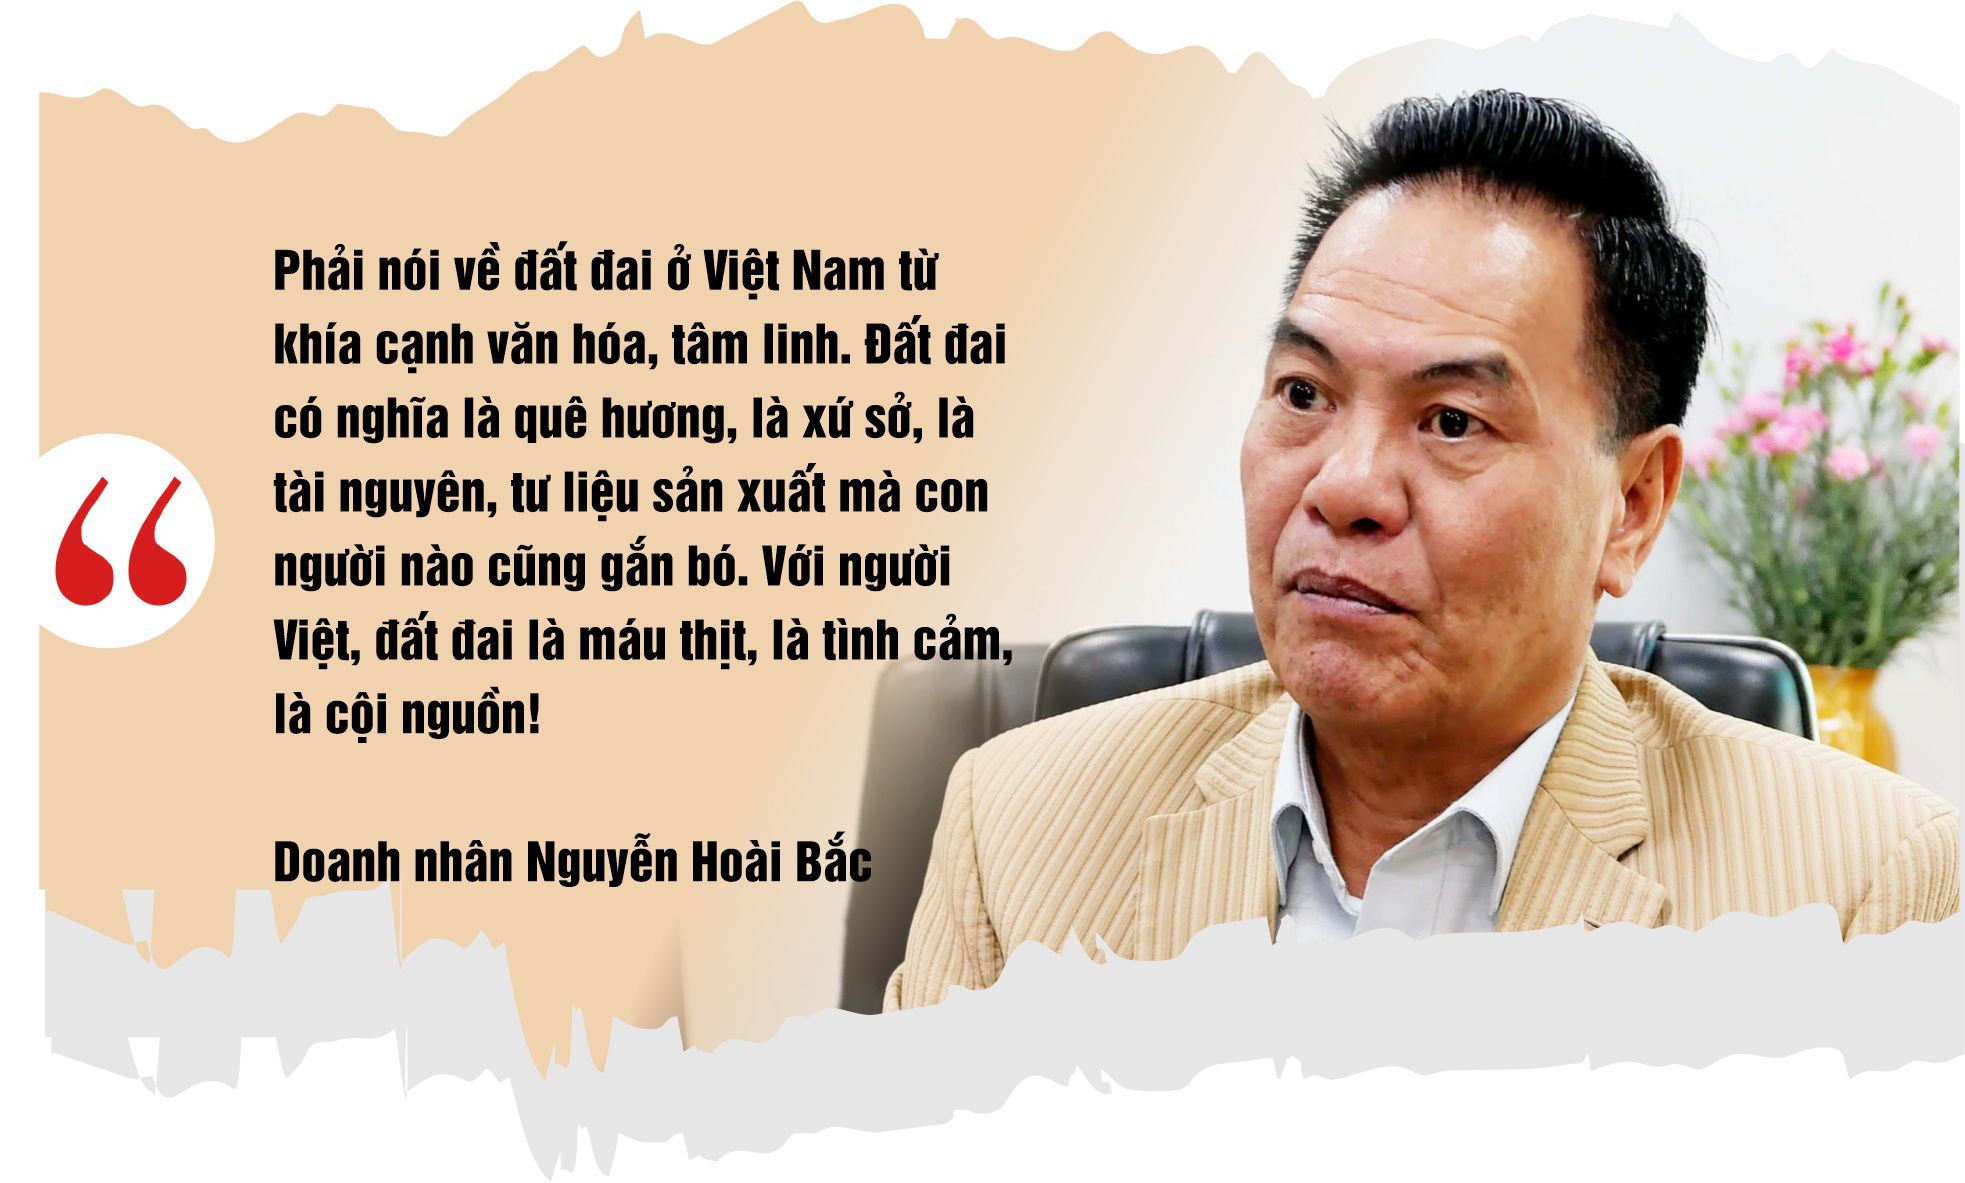 Doanh nhân Việt kiều Nguyễn Hoài Bắc: “Bất động sản có phải là nông sản, con tôm, con cá đâu mà chờ giải cứu!” - Ảnh 2.